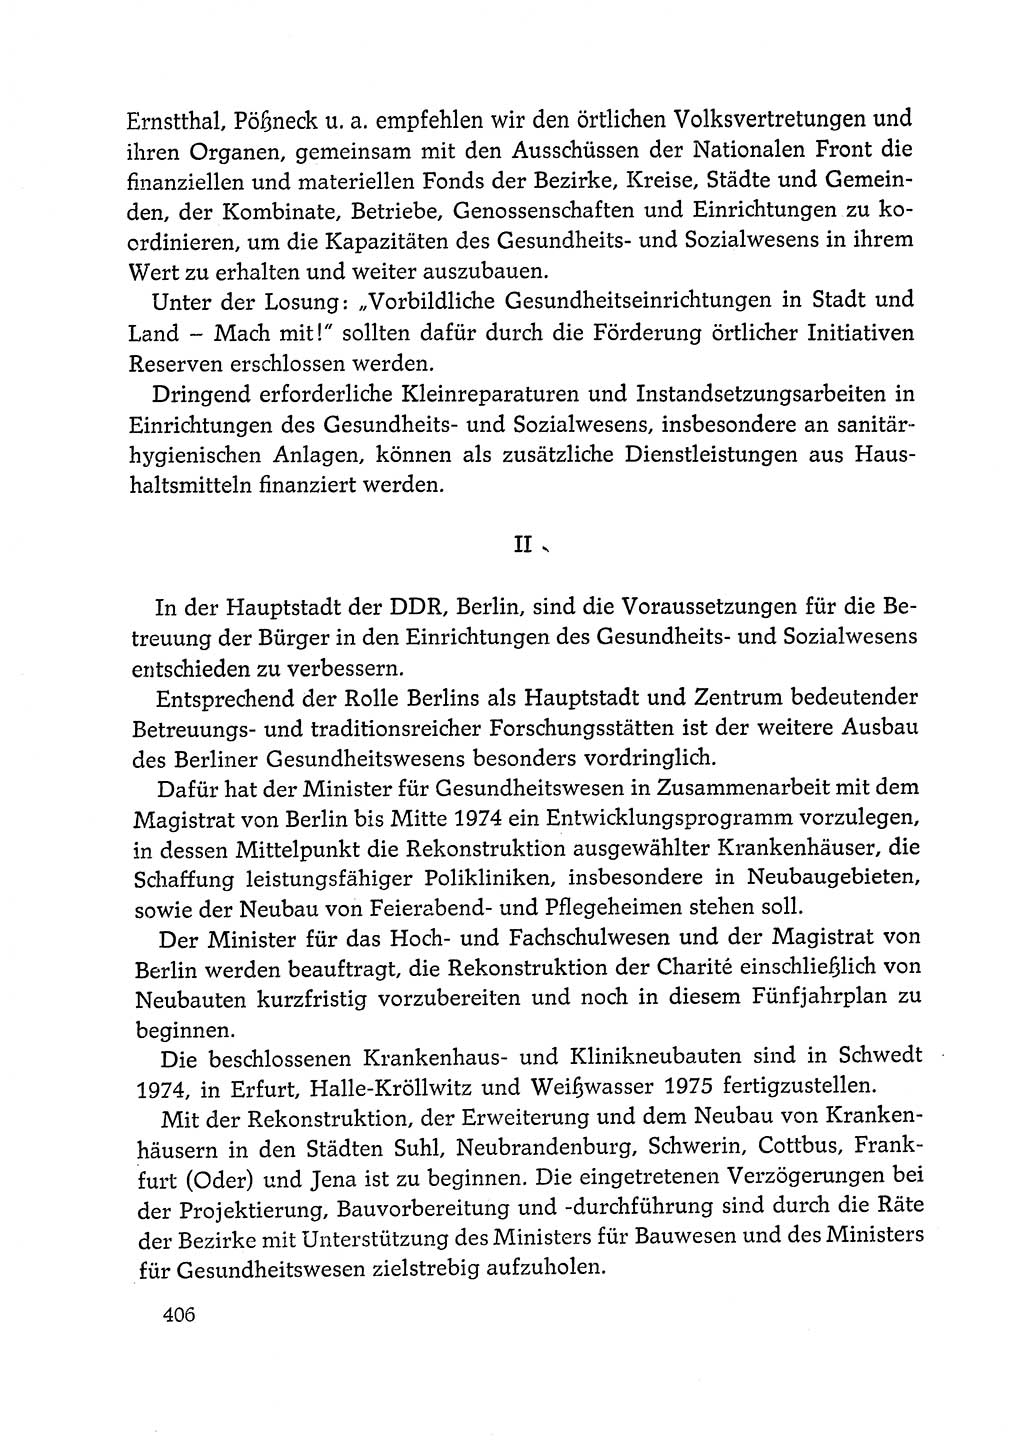 Dokumente der Sozialistischen Einheitspartei Deutschlands (SED) [Deutsche Demokratische Republik (DDR)] 1972-1973, Seite 406 (Dok. SED DDR 1972-1973, S. 406)